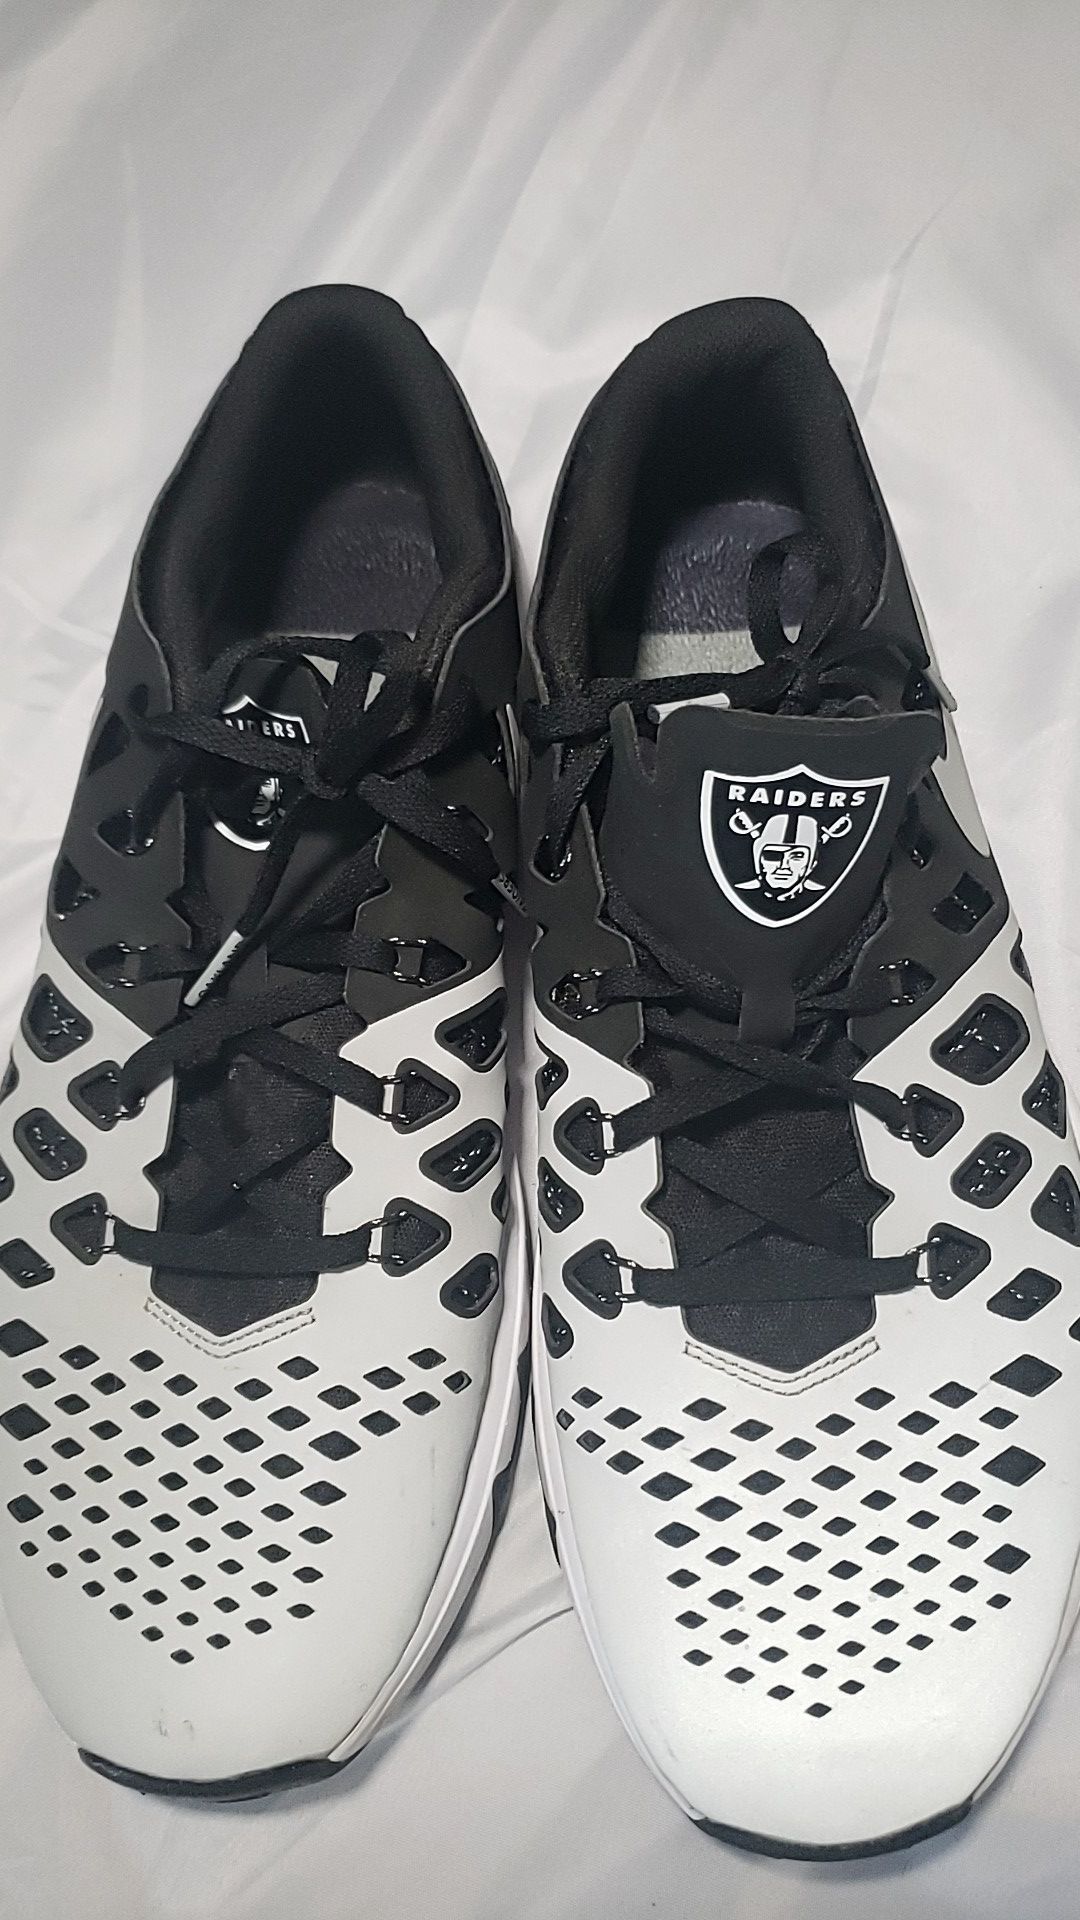 Raiders nike shoes